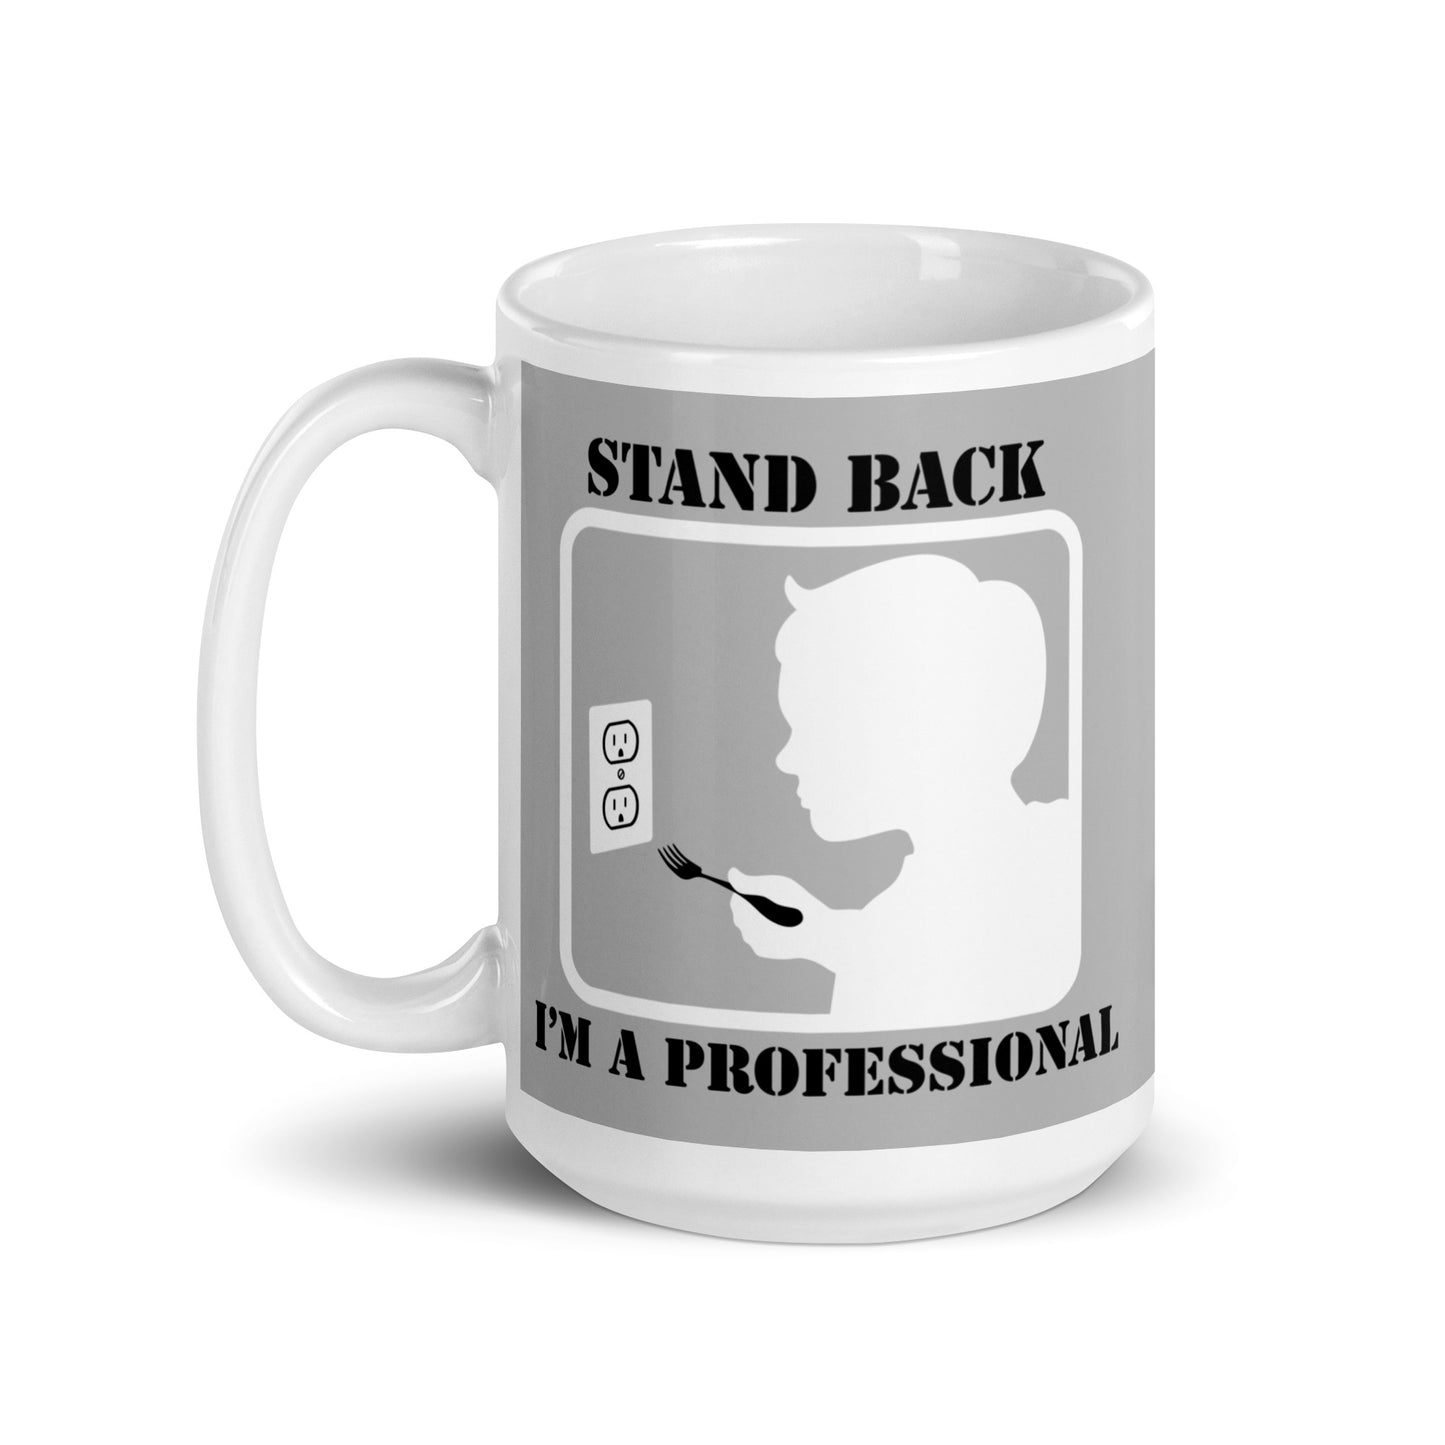 Stand Back, I'm A Professional Mug